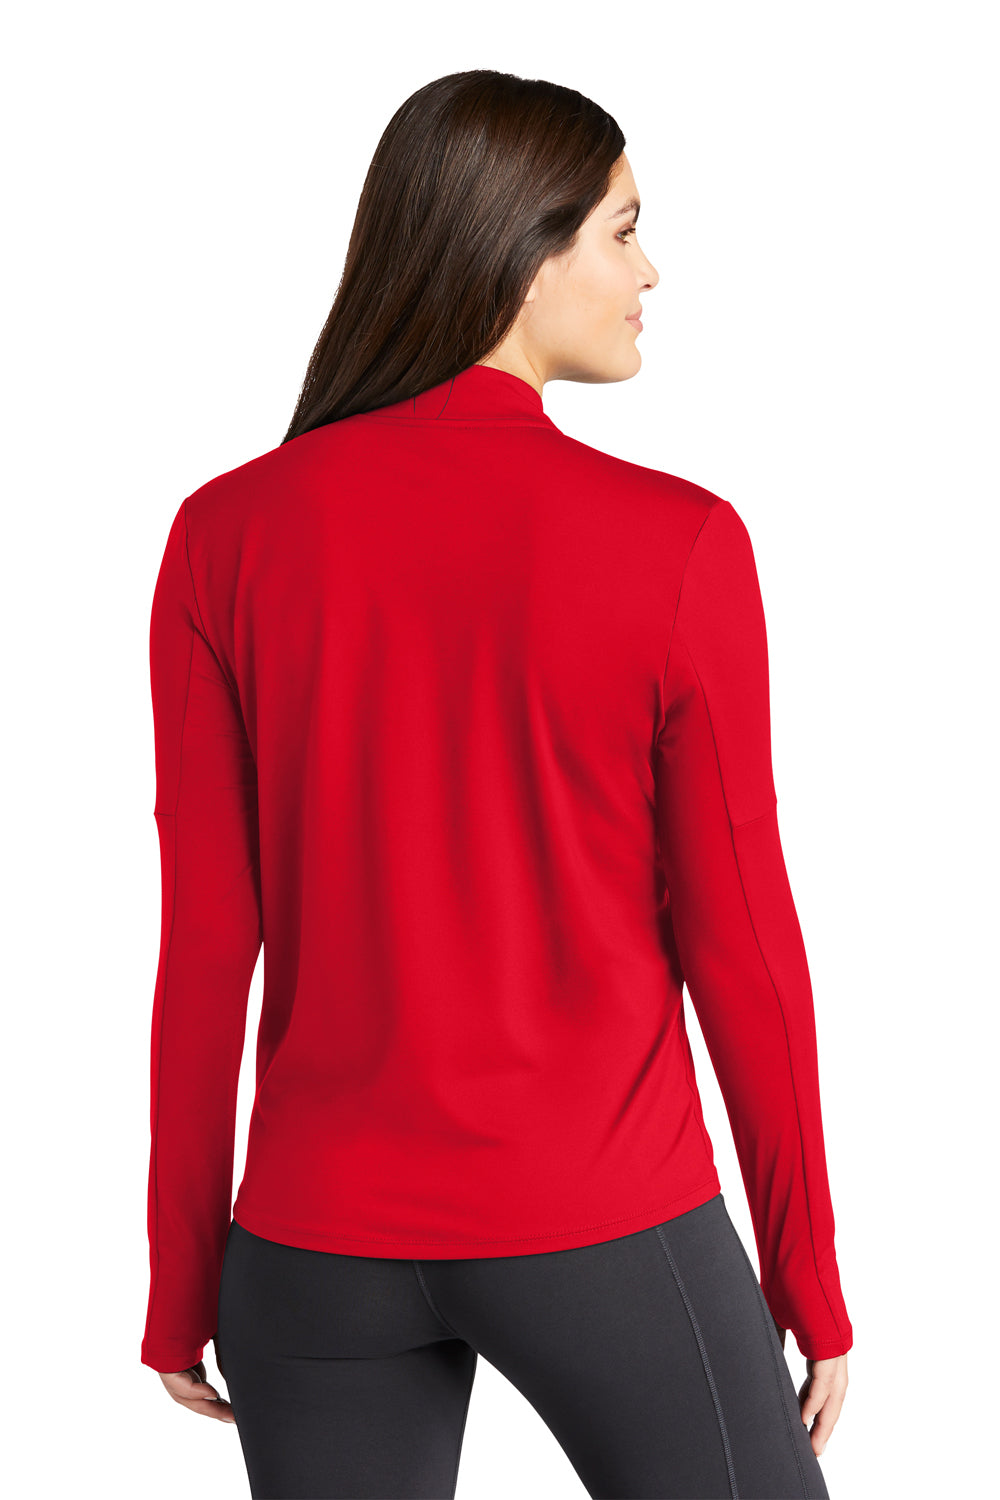 Nike NKDH4951 Womens Element Dri-Fit Moisture Wicking 1/4 Zip Sweatshirt Scarlet Red Model Back